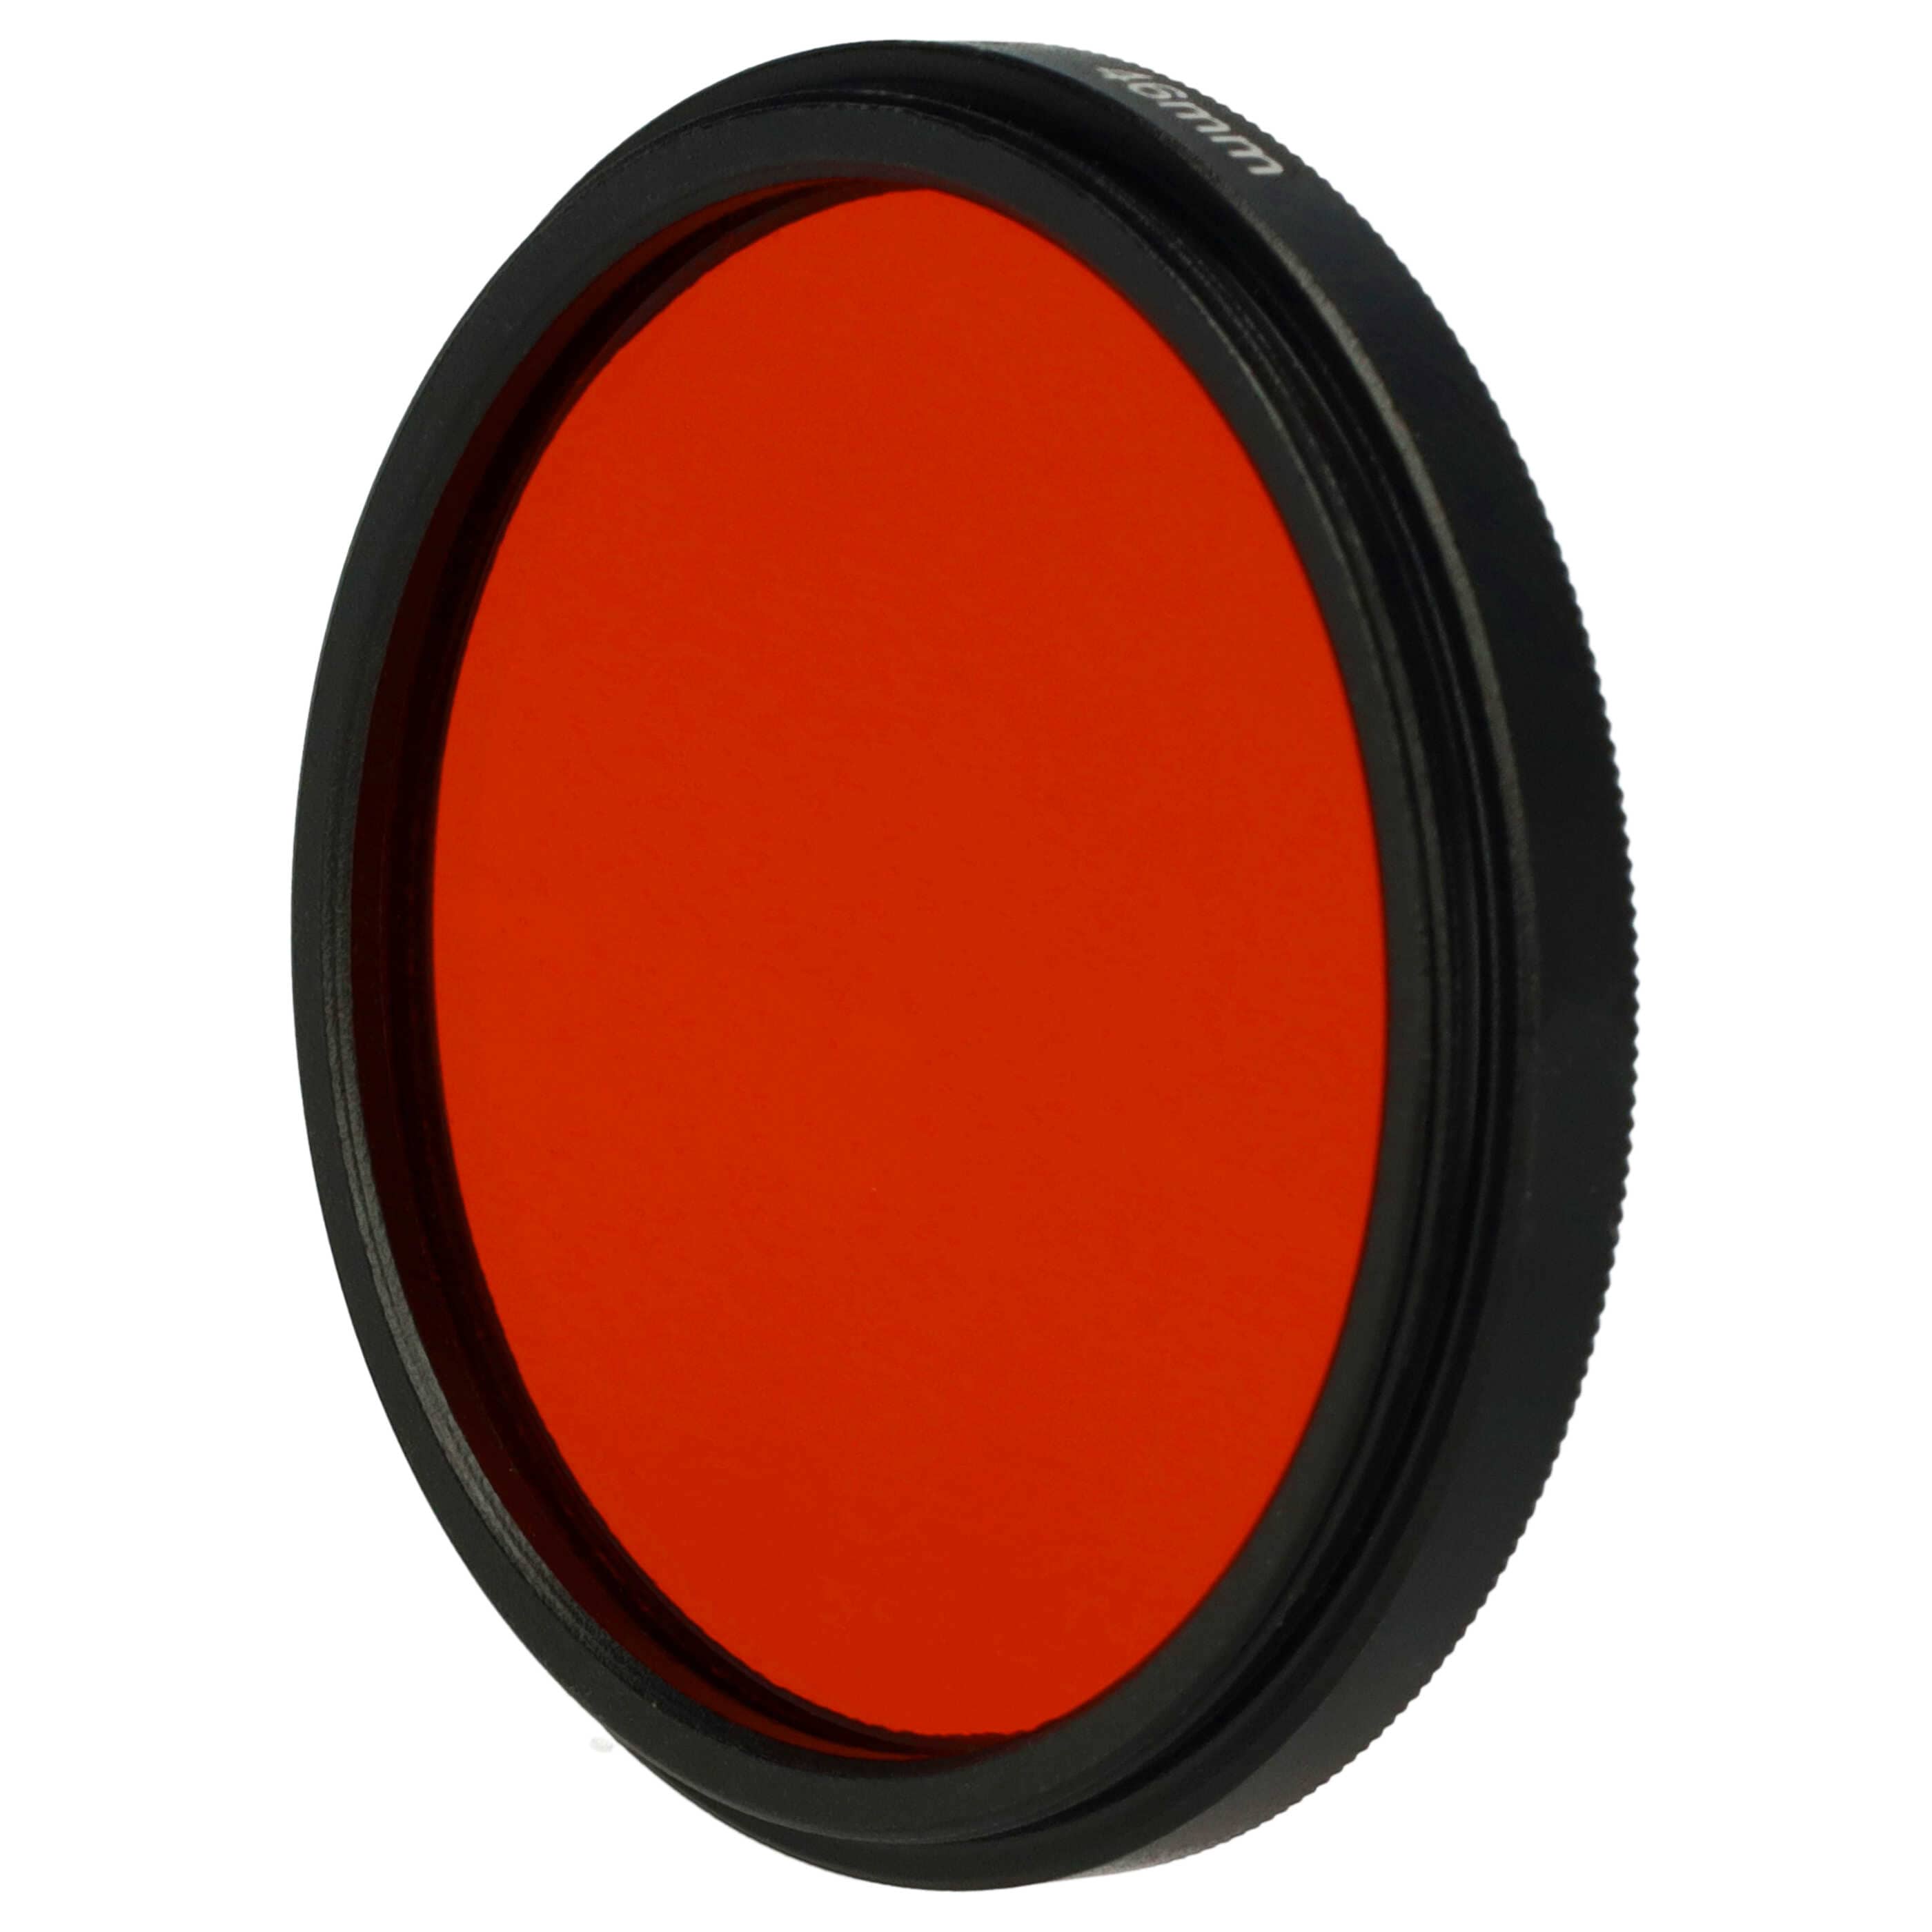 Farbfilter orange passend für Kamera Objektive mit 46 mm Filtergewinde - Orangefilter